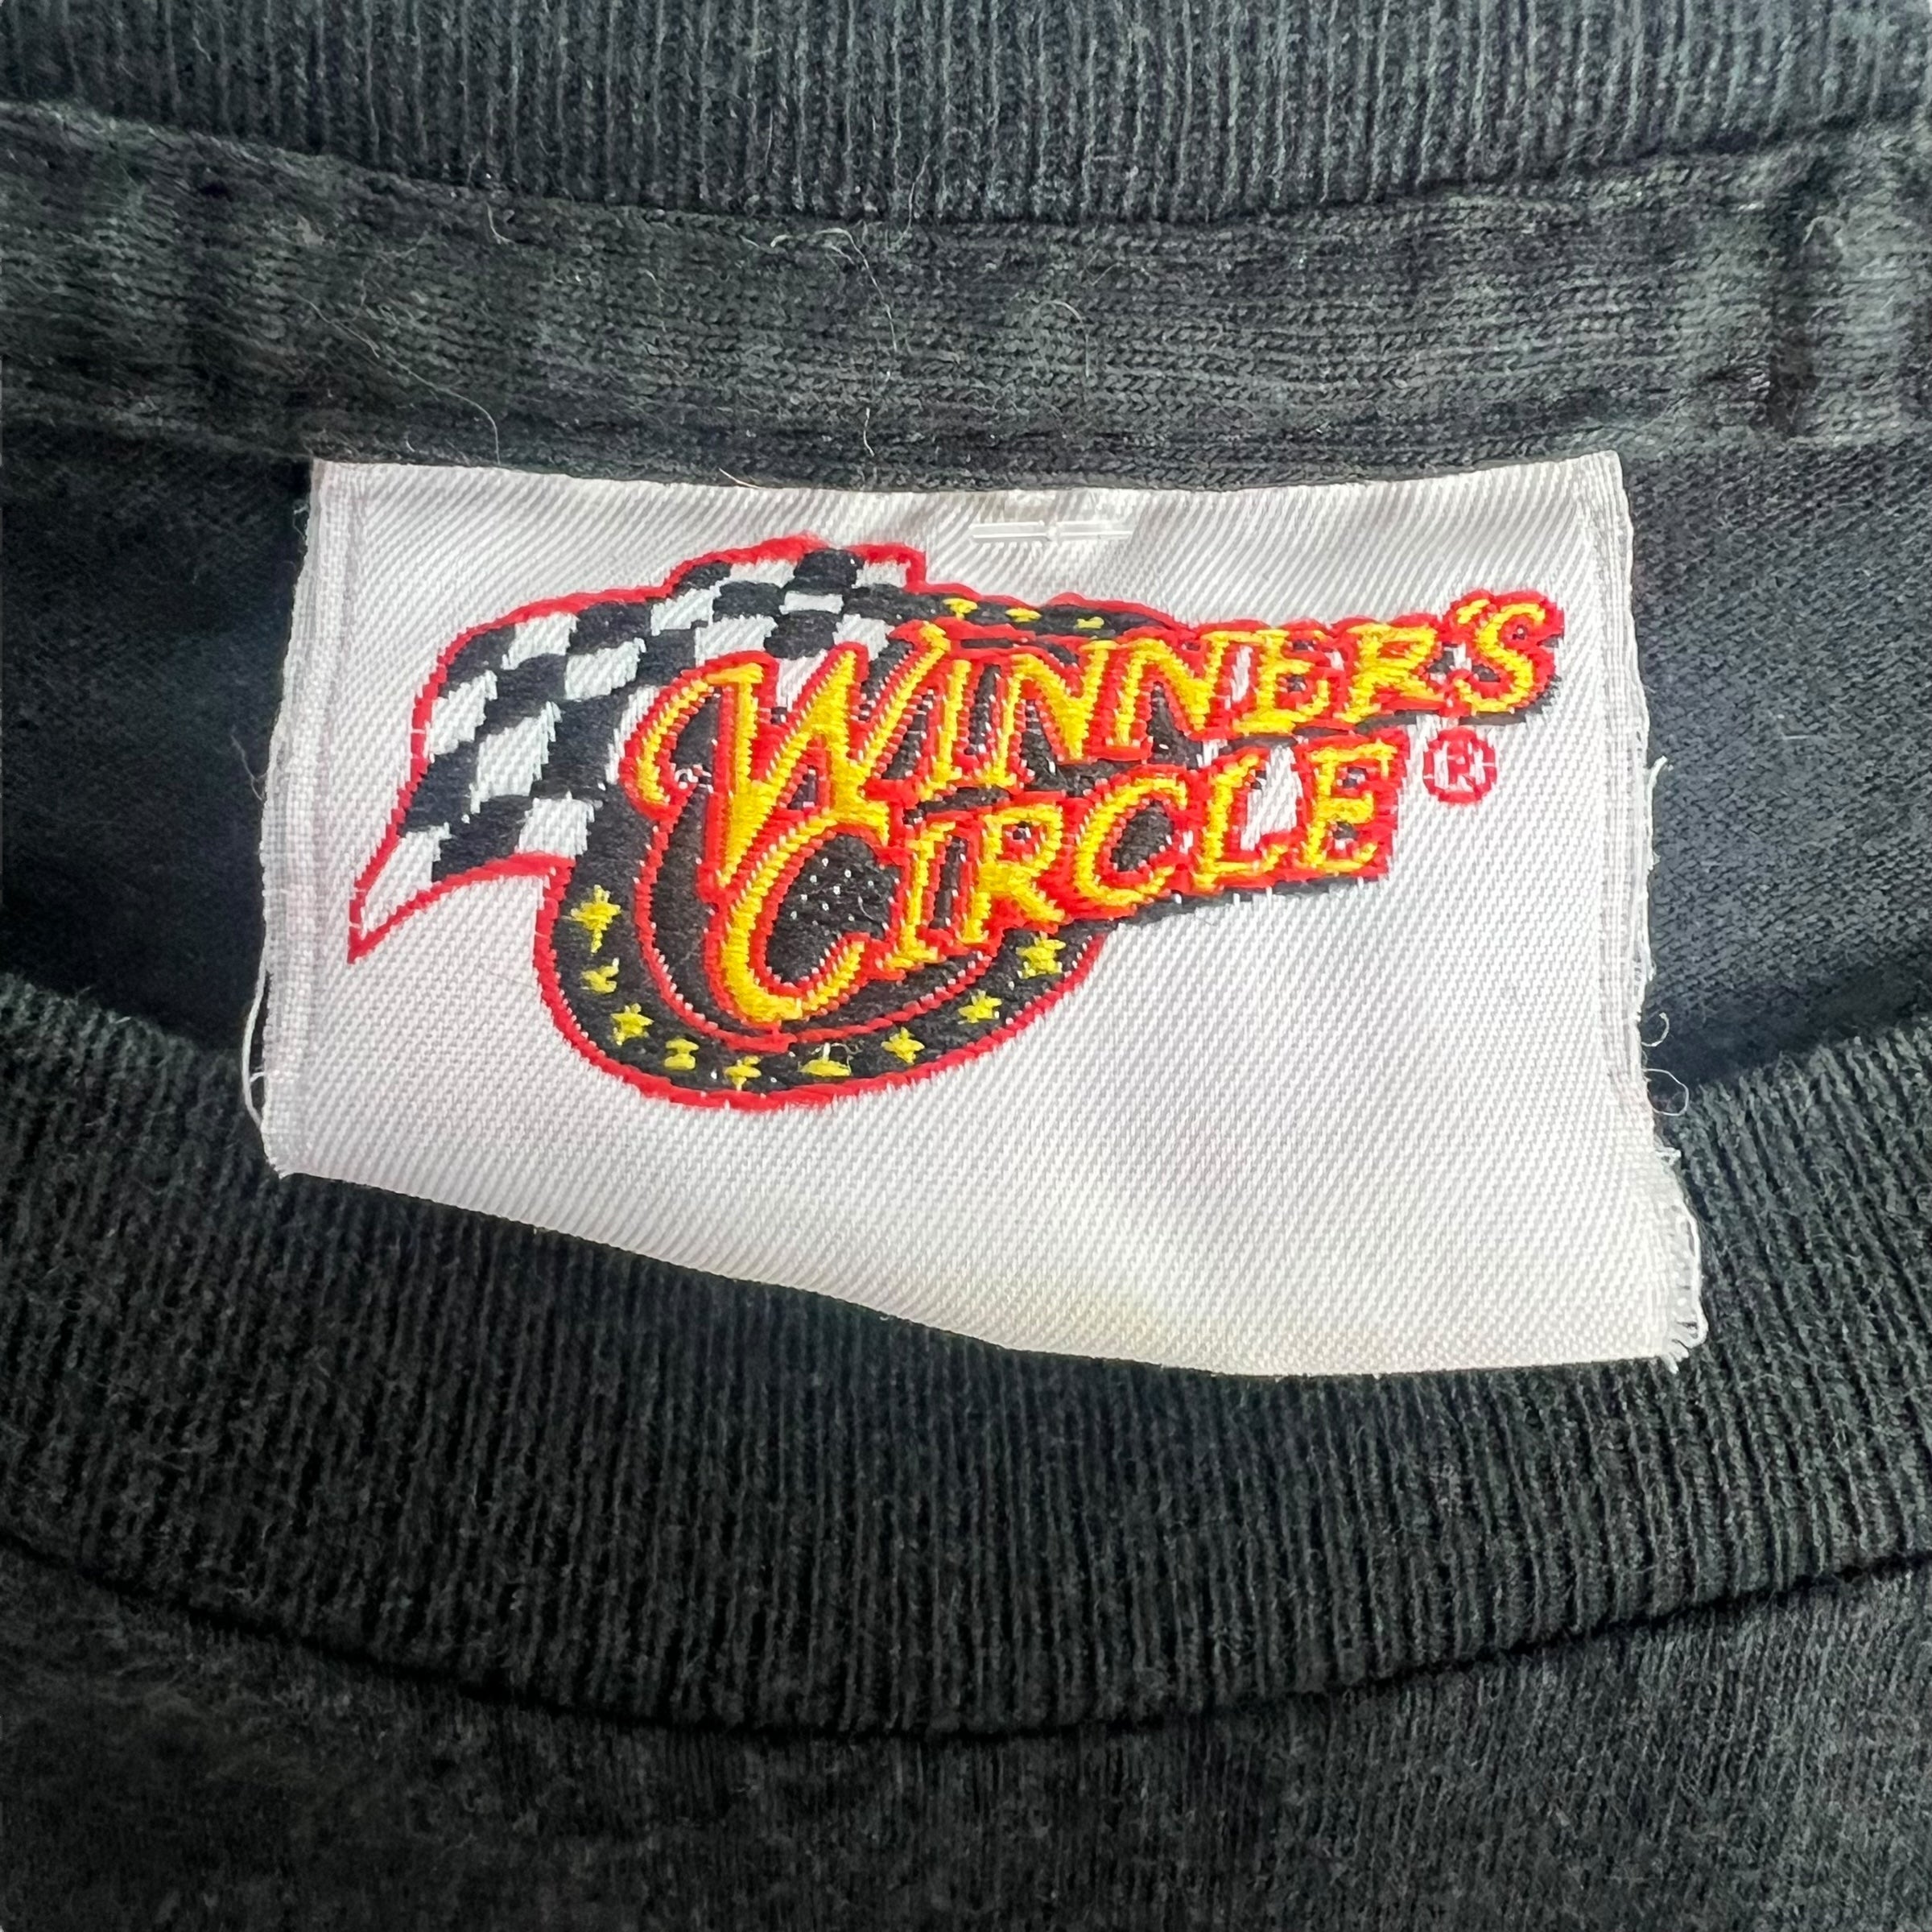 Vintage Dale Jr. NASCAR T-Shirt Black